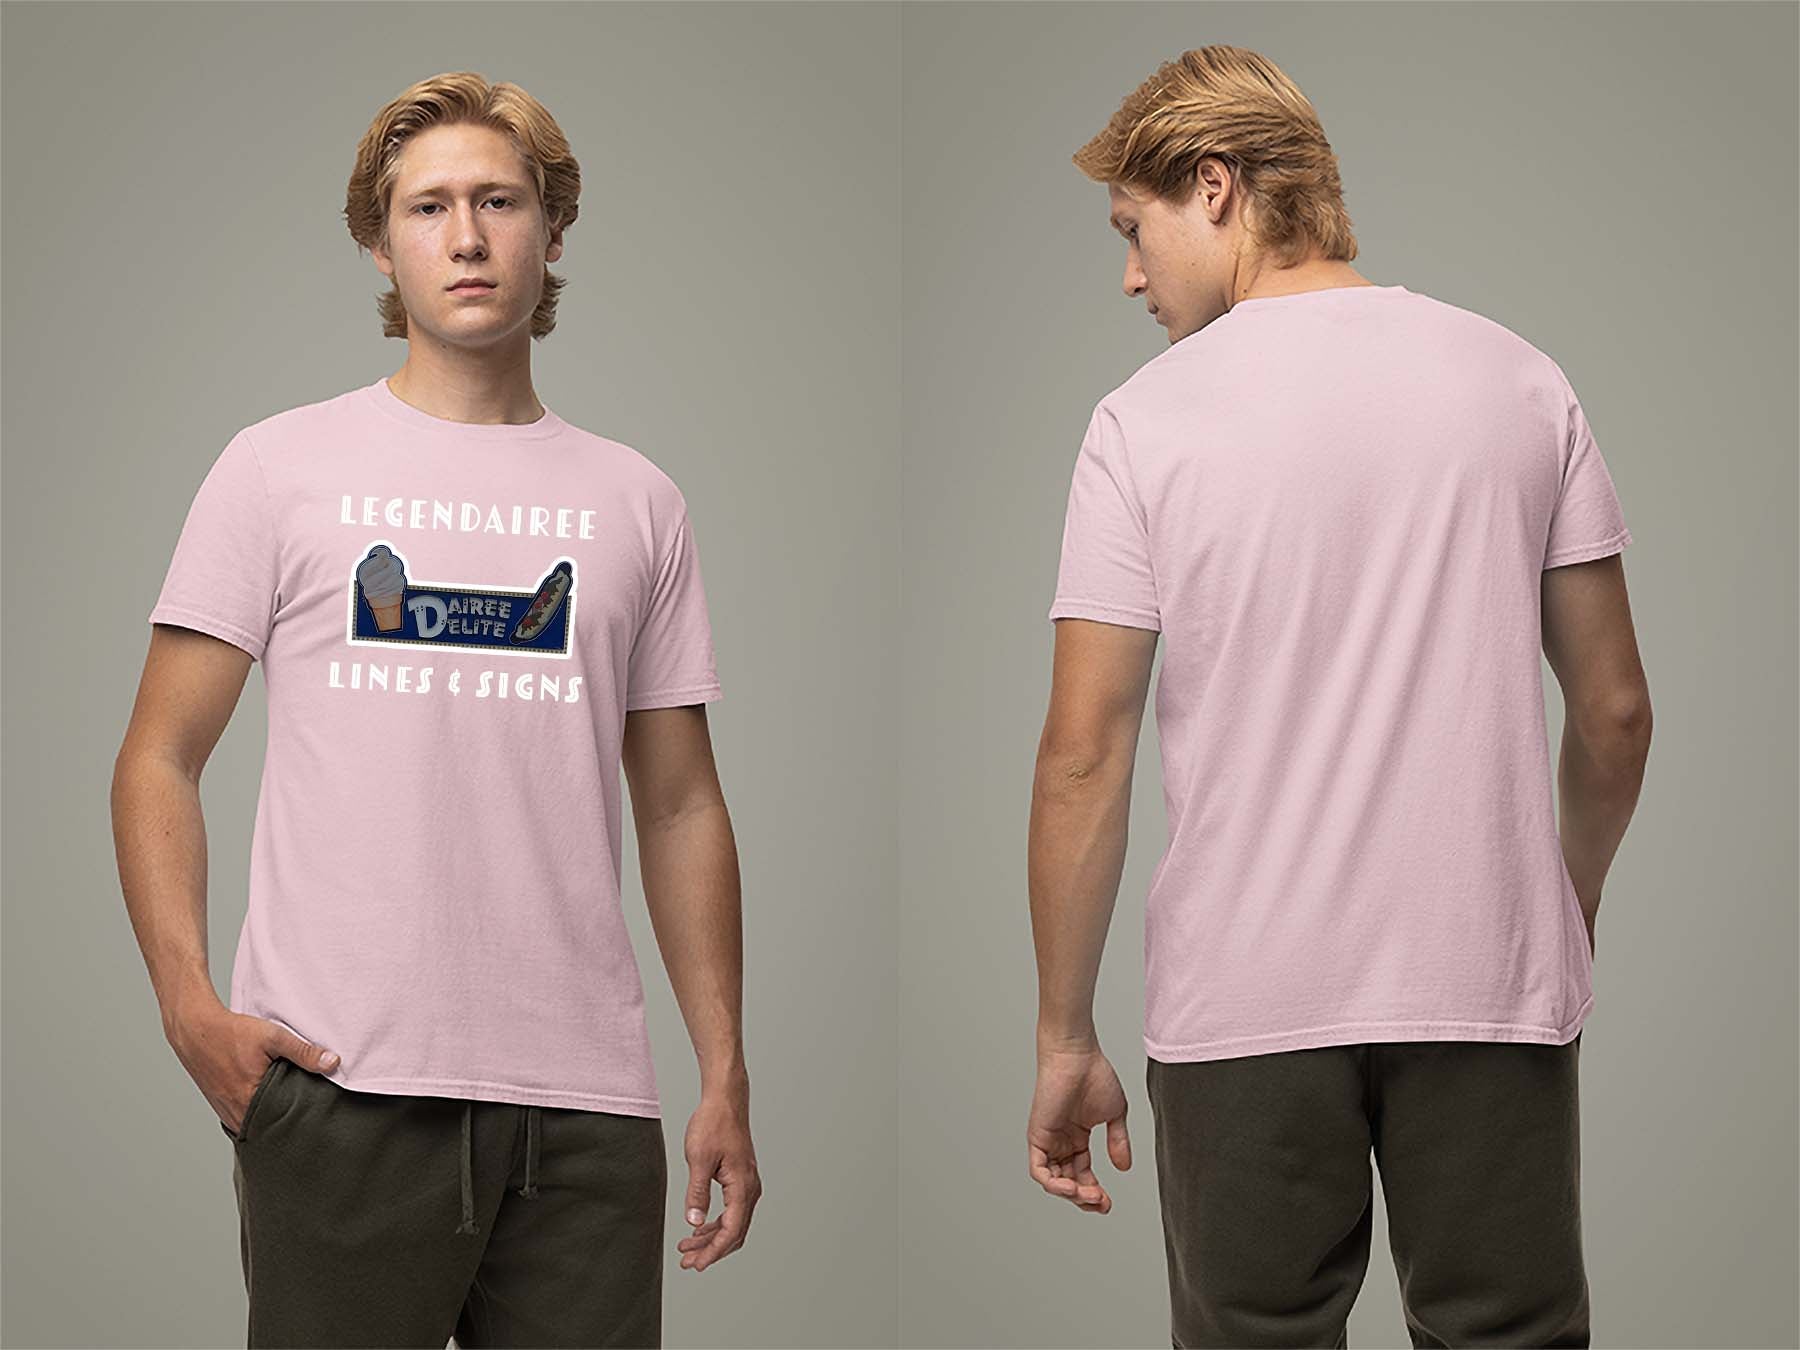 Legendairee T-Shirt Small Light Pink